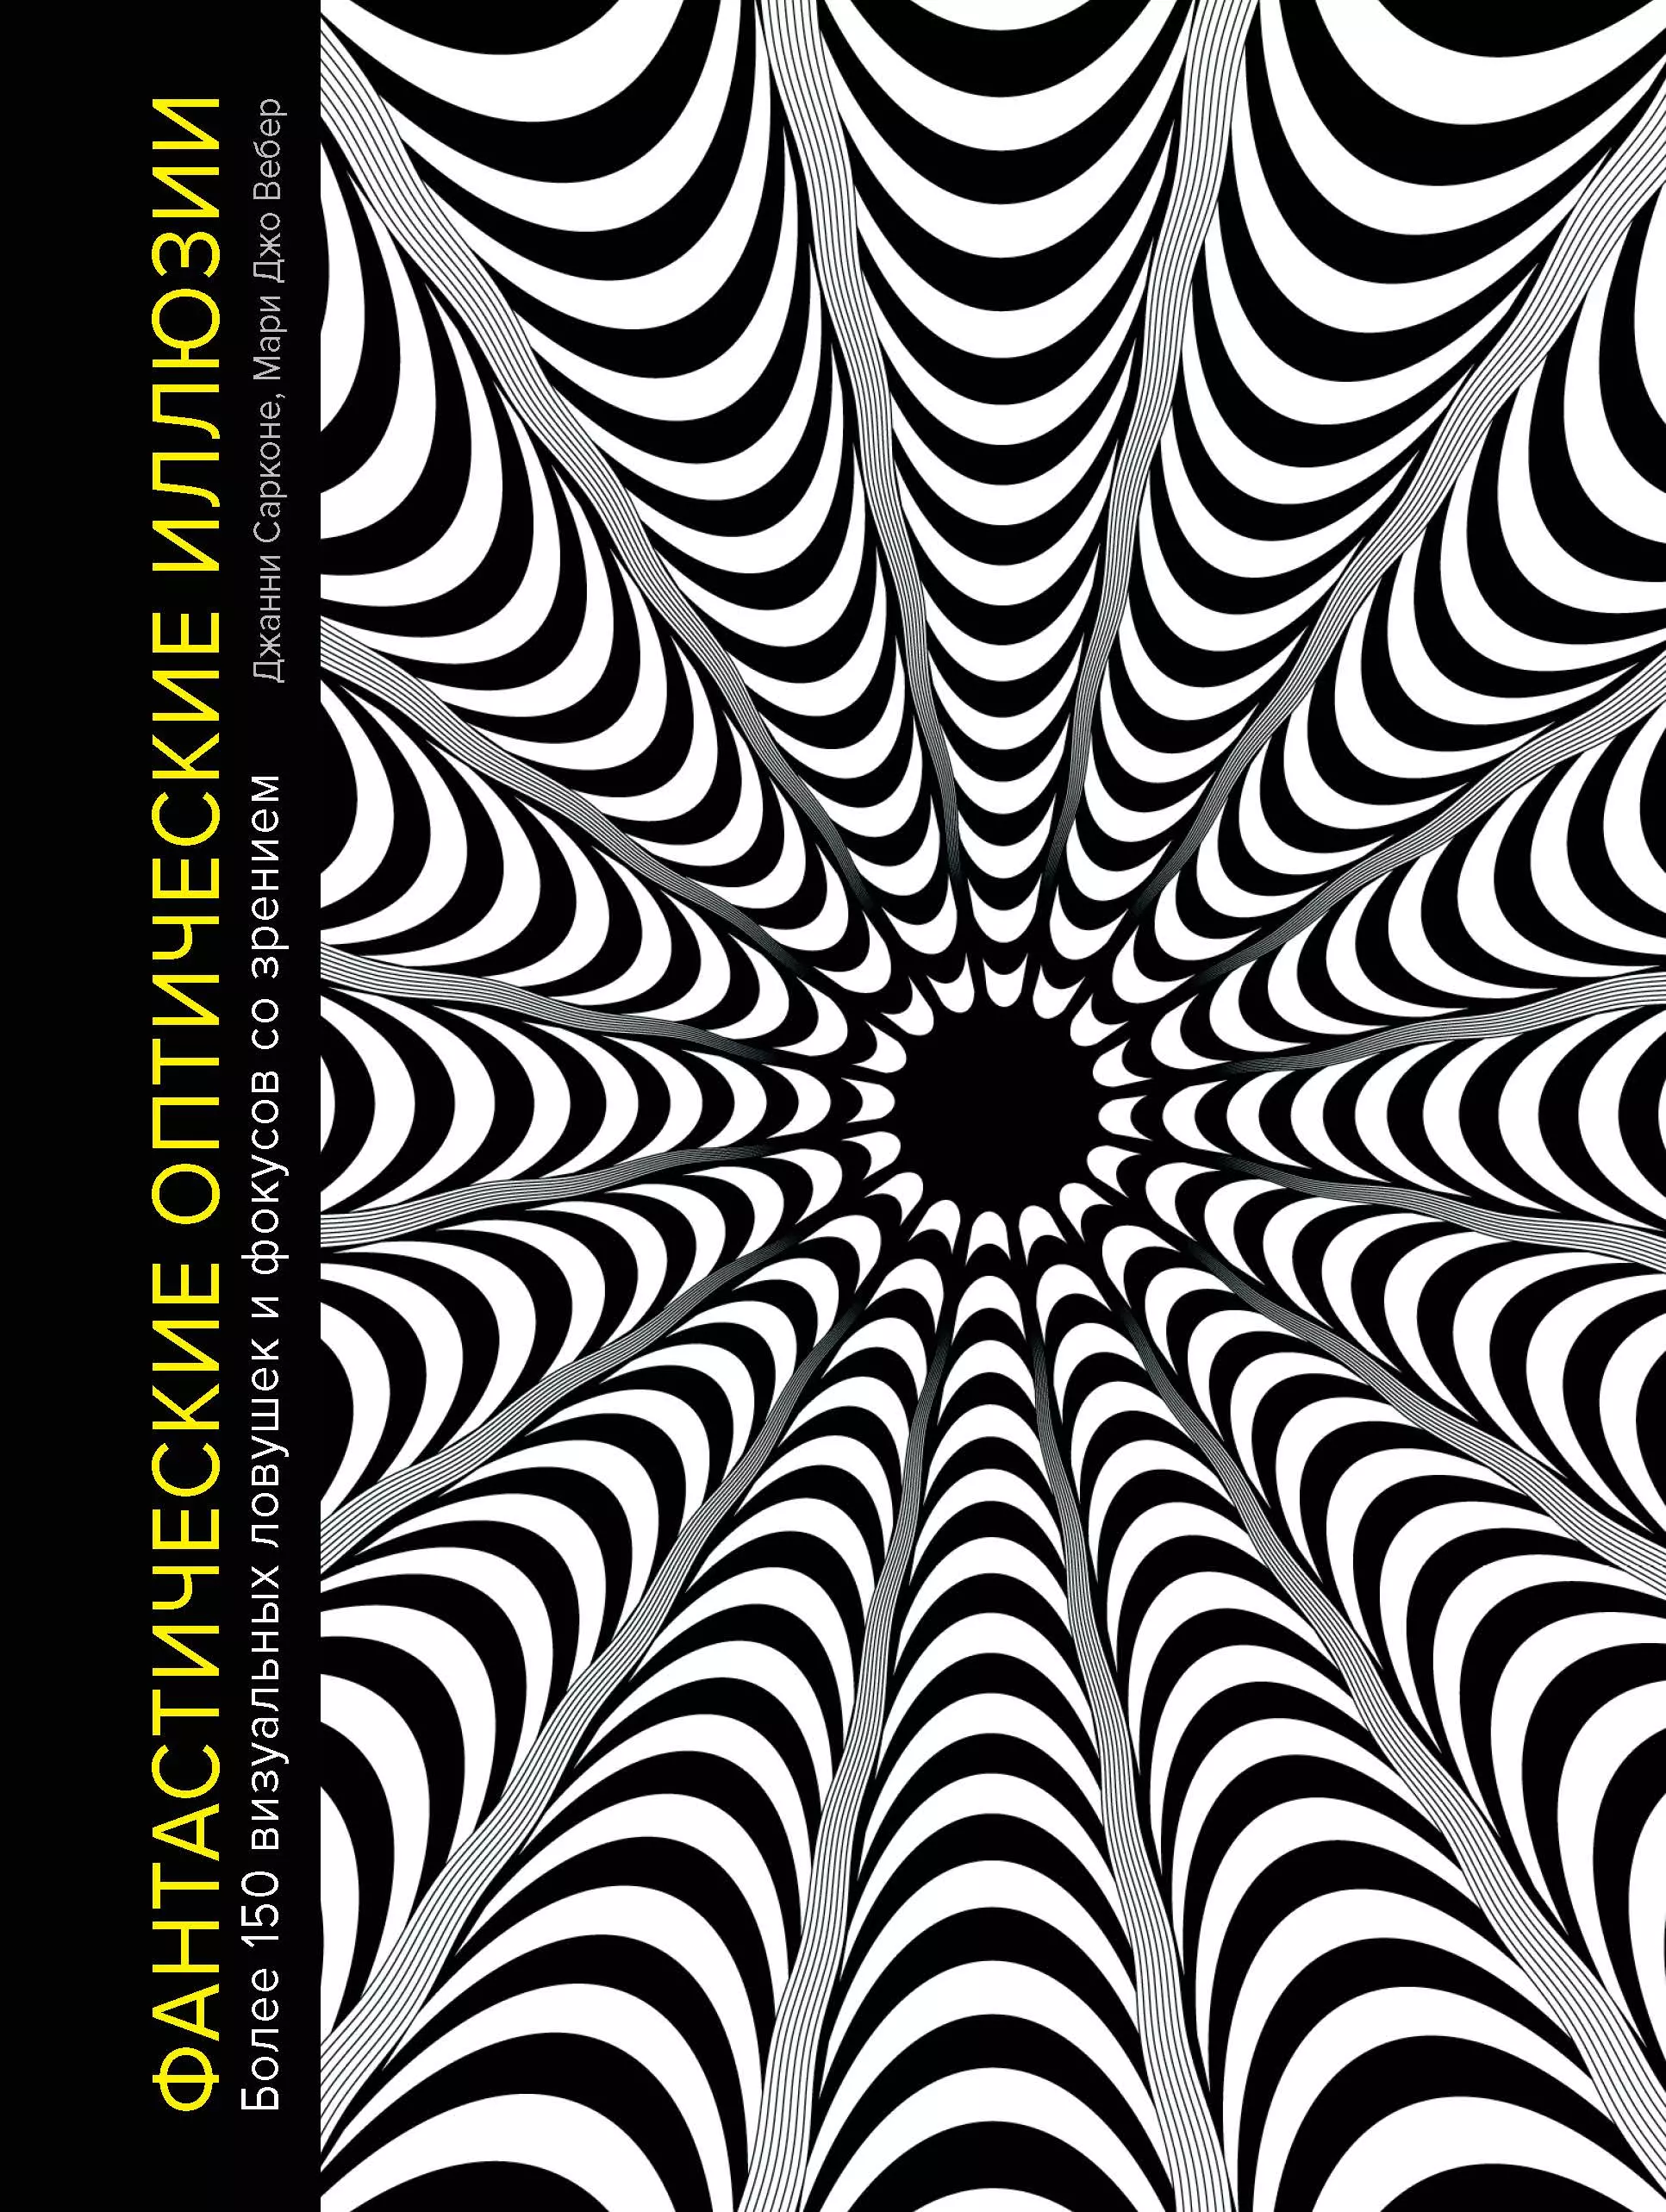 Сарконе Джанни Фантастические оптические иллюзии. Более 150 визуальных ловушек и фокусов со зрением